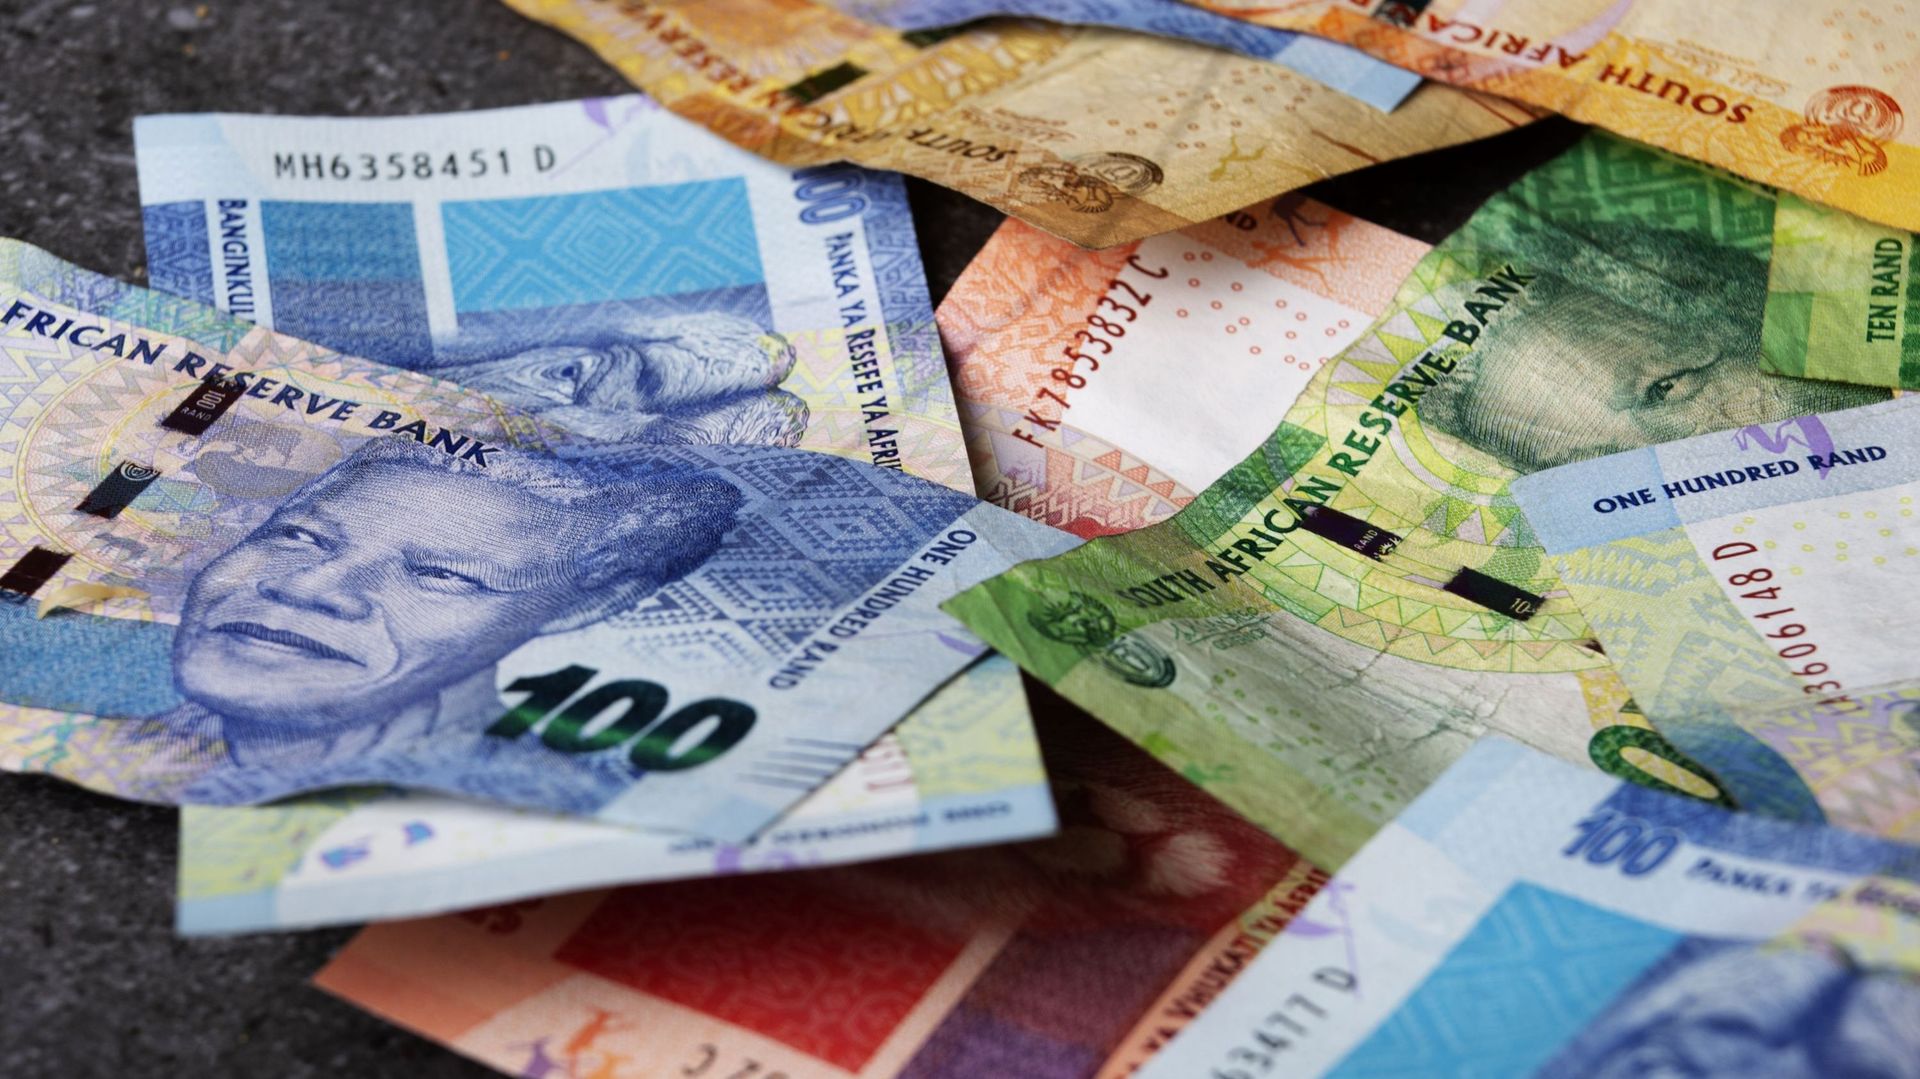 Le rapport recommande notamment que tous les contrats conclus par Bain avec des entités publiques sud africaines soient réexaminés. Leur valeur dépasserait 110 millions d’euros.